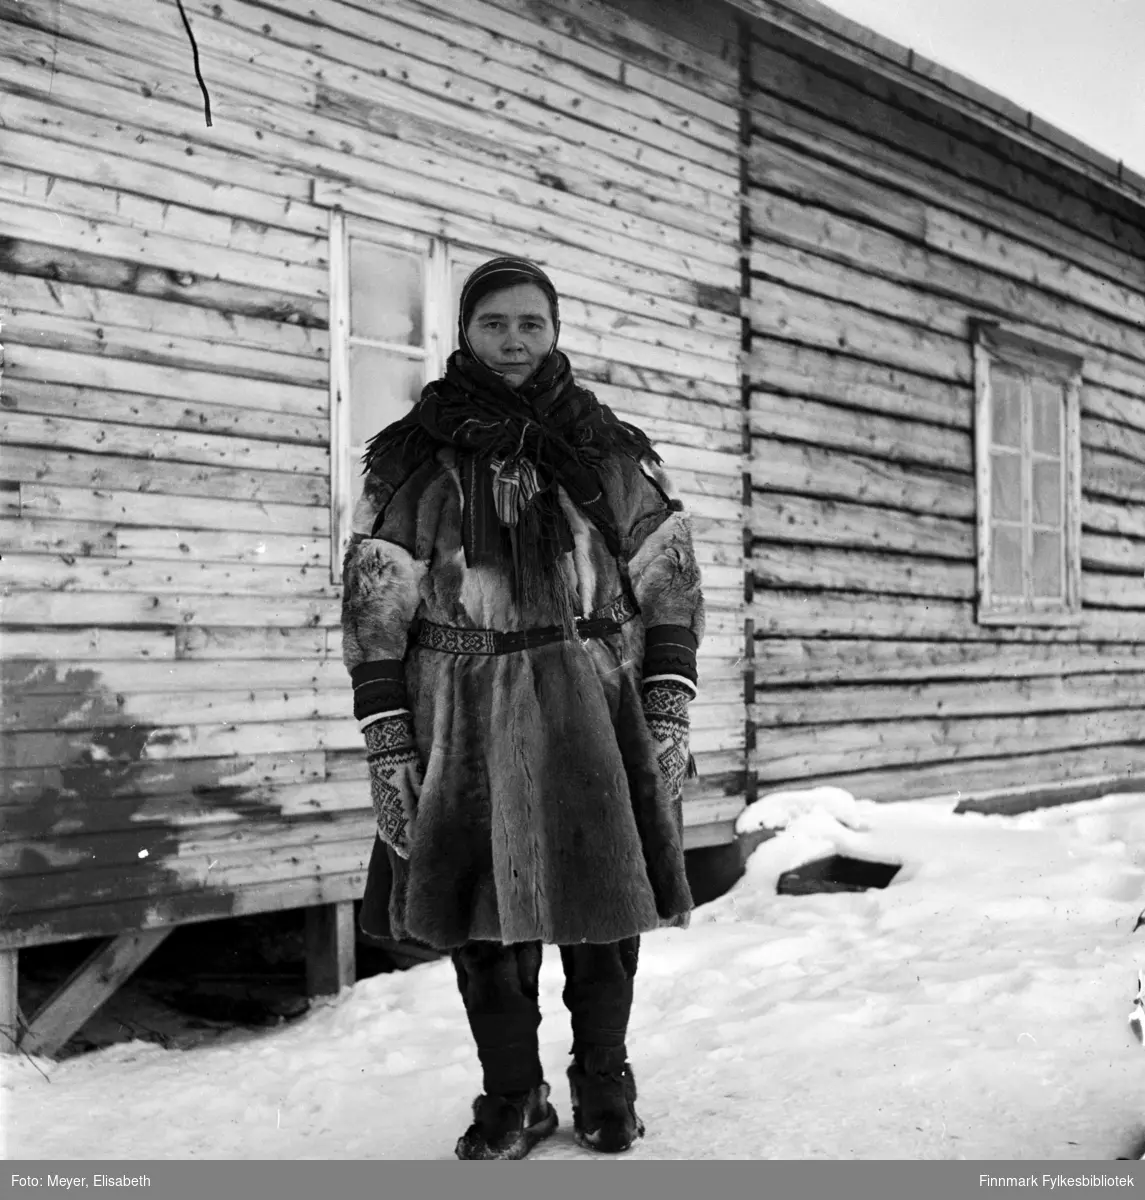 Ellen Johnsdatter Utsi kledd i samisk pesk med samisk belte, lue, sjal og votter. Fotografert av Elisabeth Meyer, mulighens i perioden rundt påske 1940 i området Kautokeino.